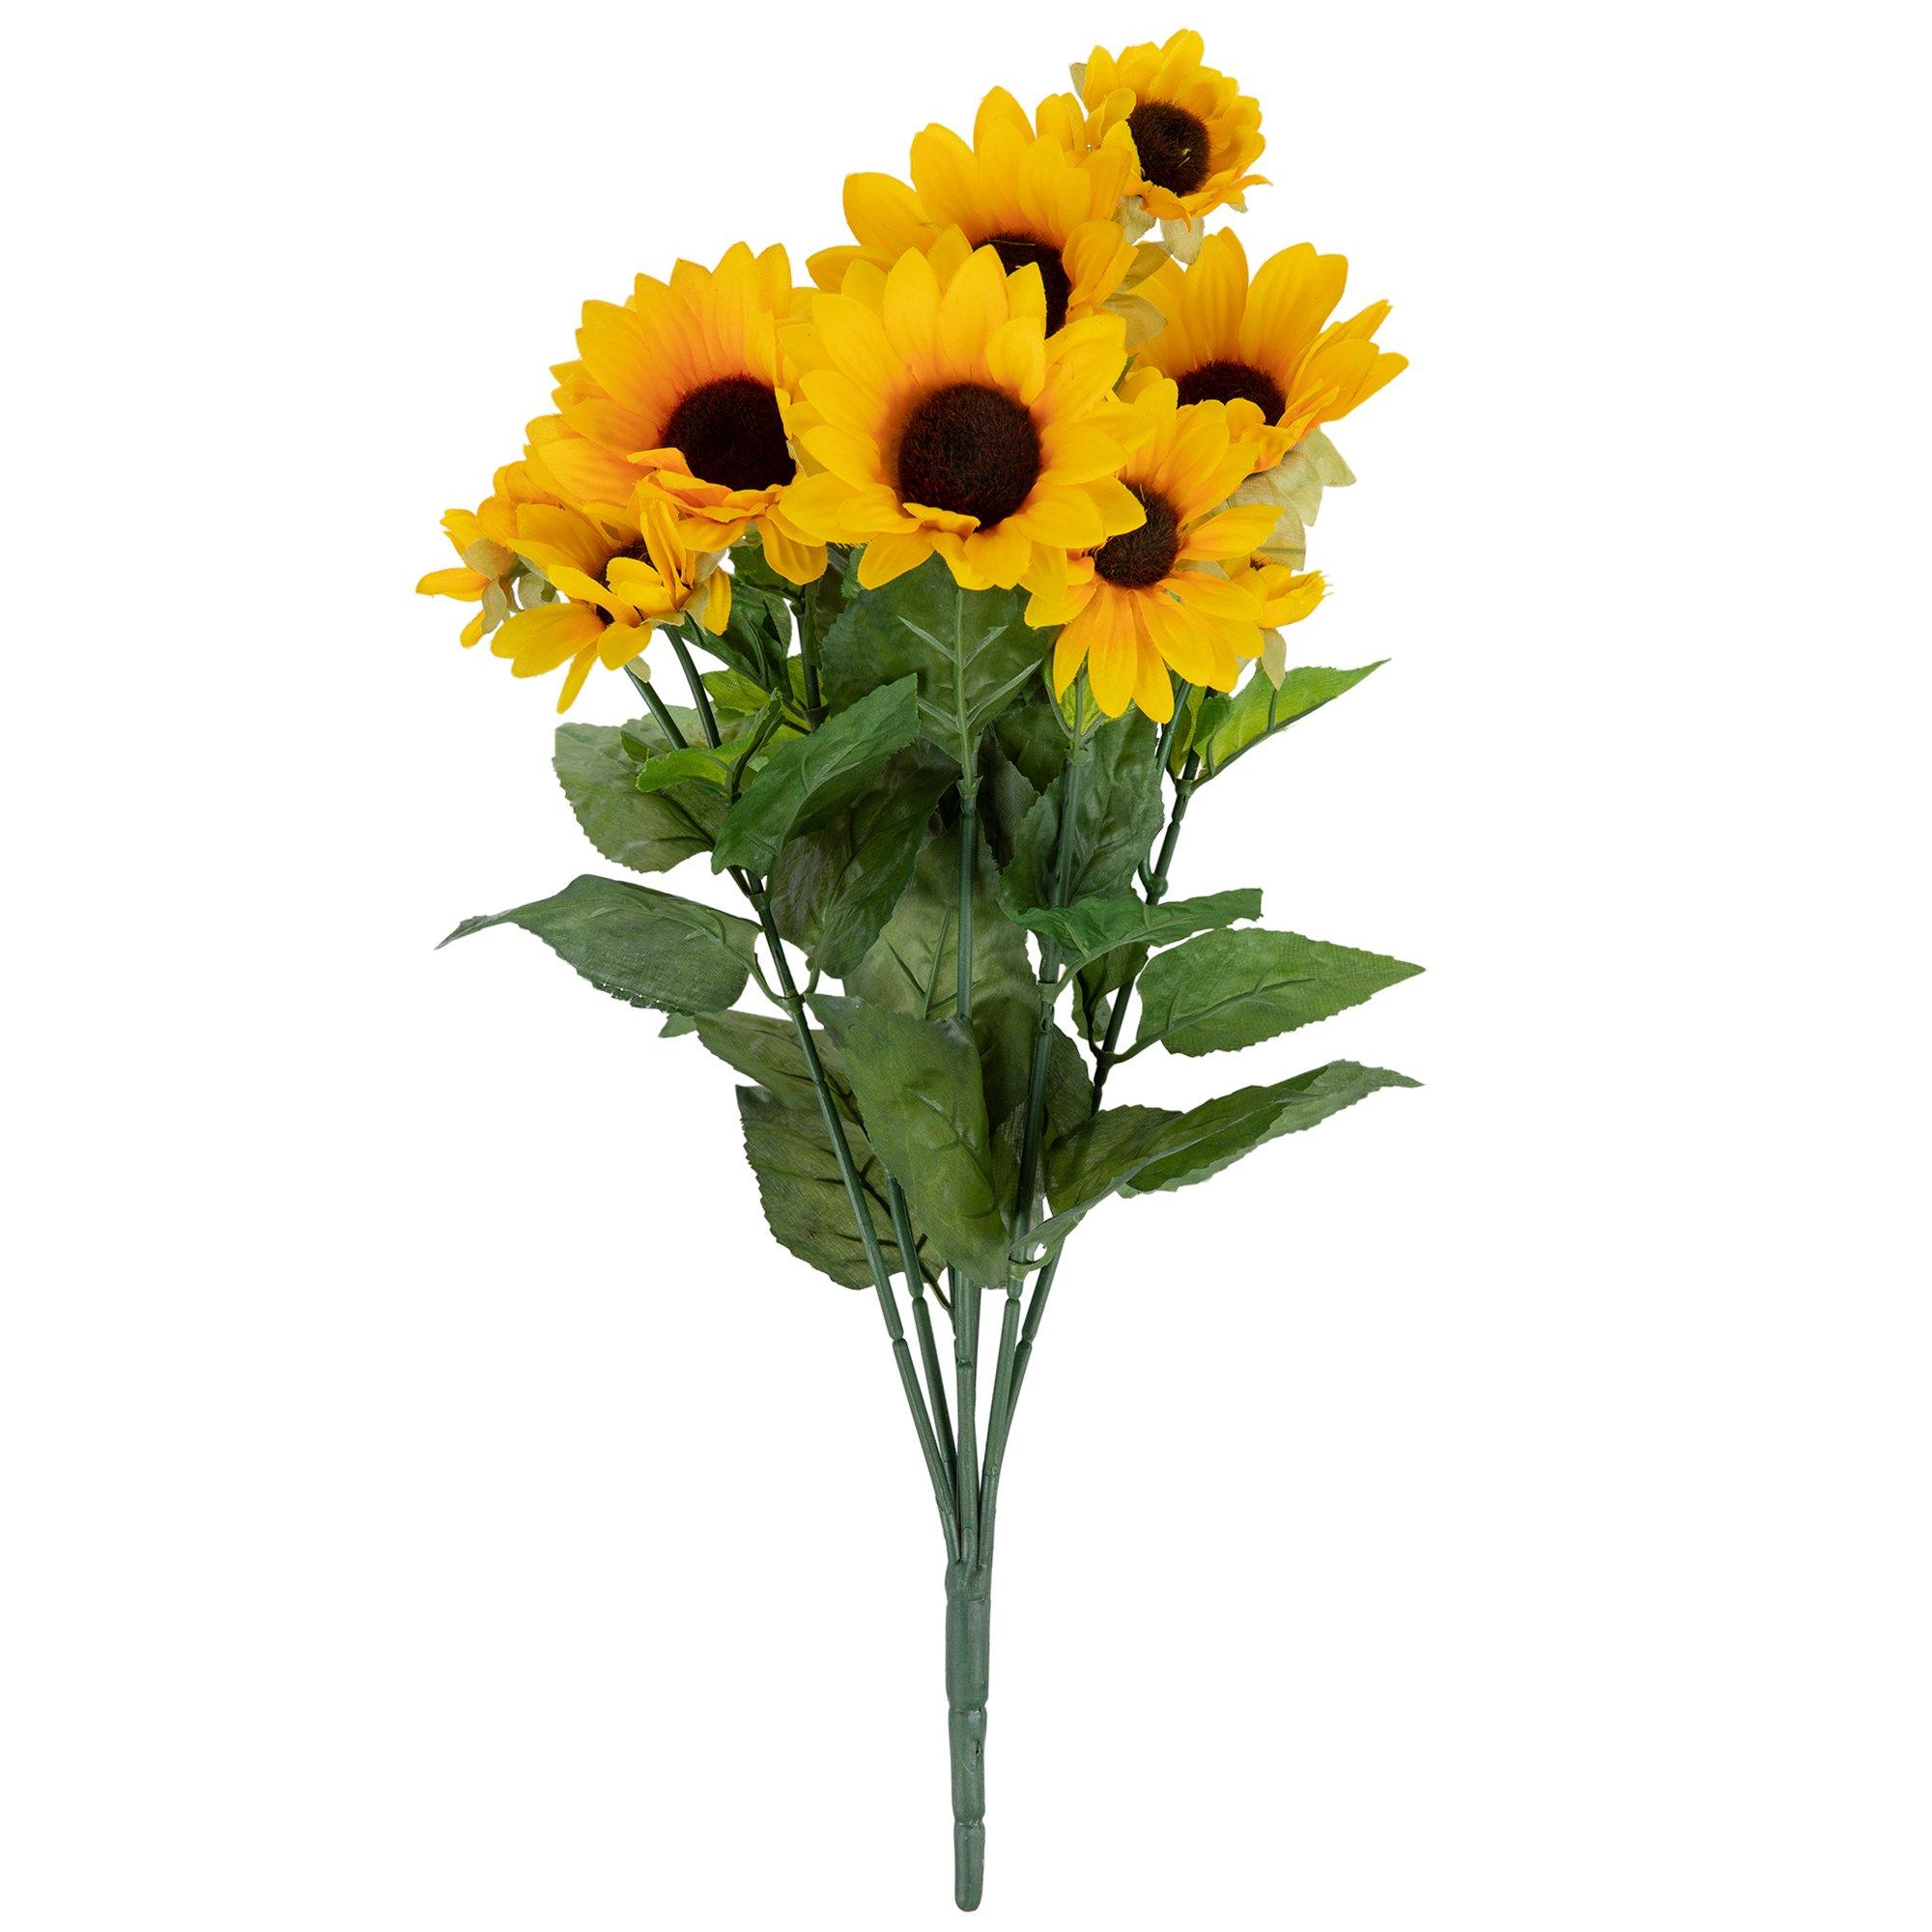 3 Stalk Sunflower Bouquet in Brown Paper